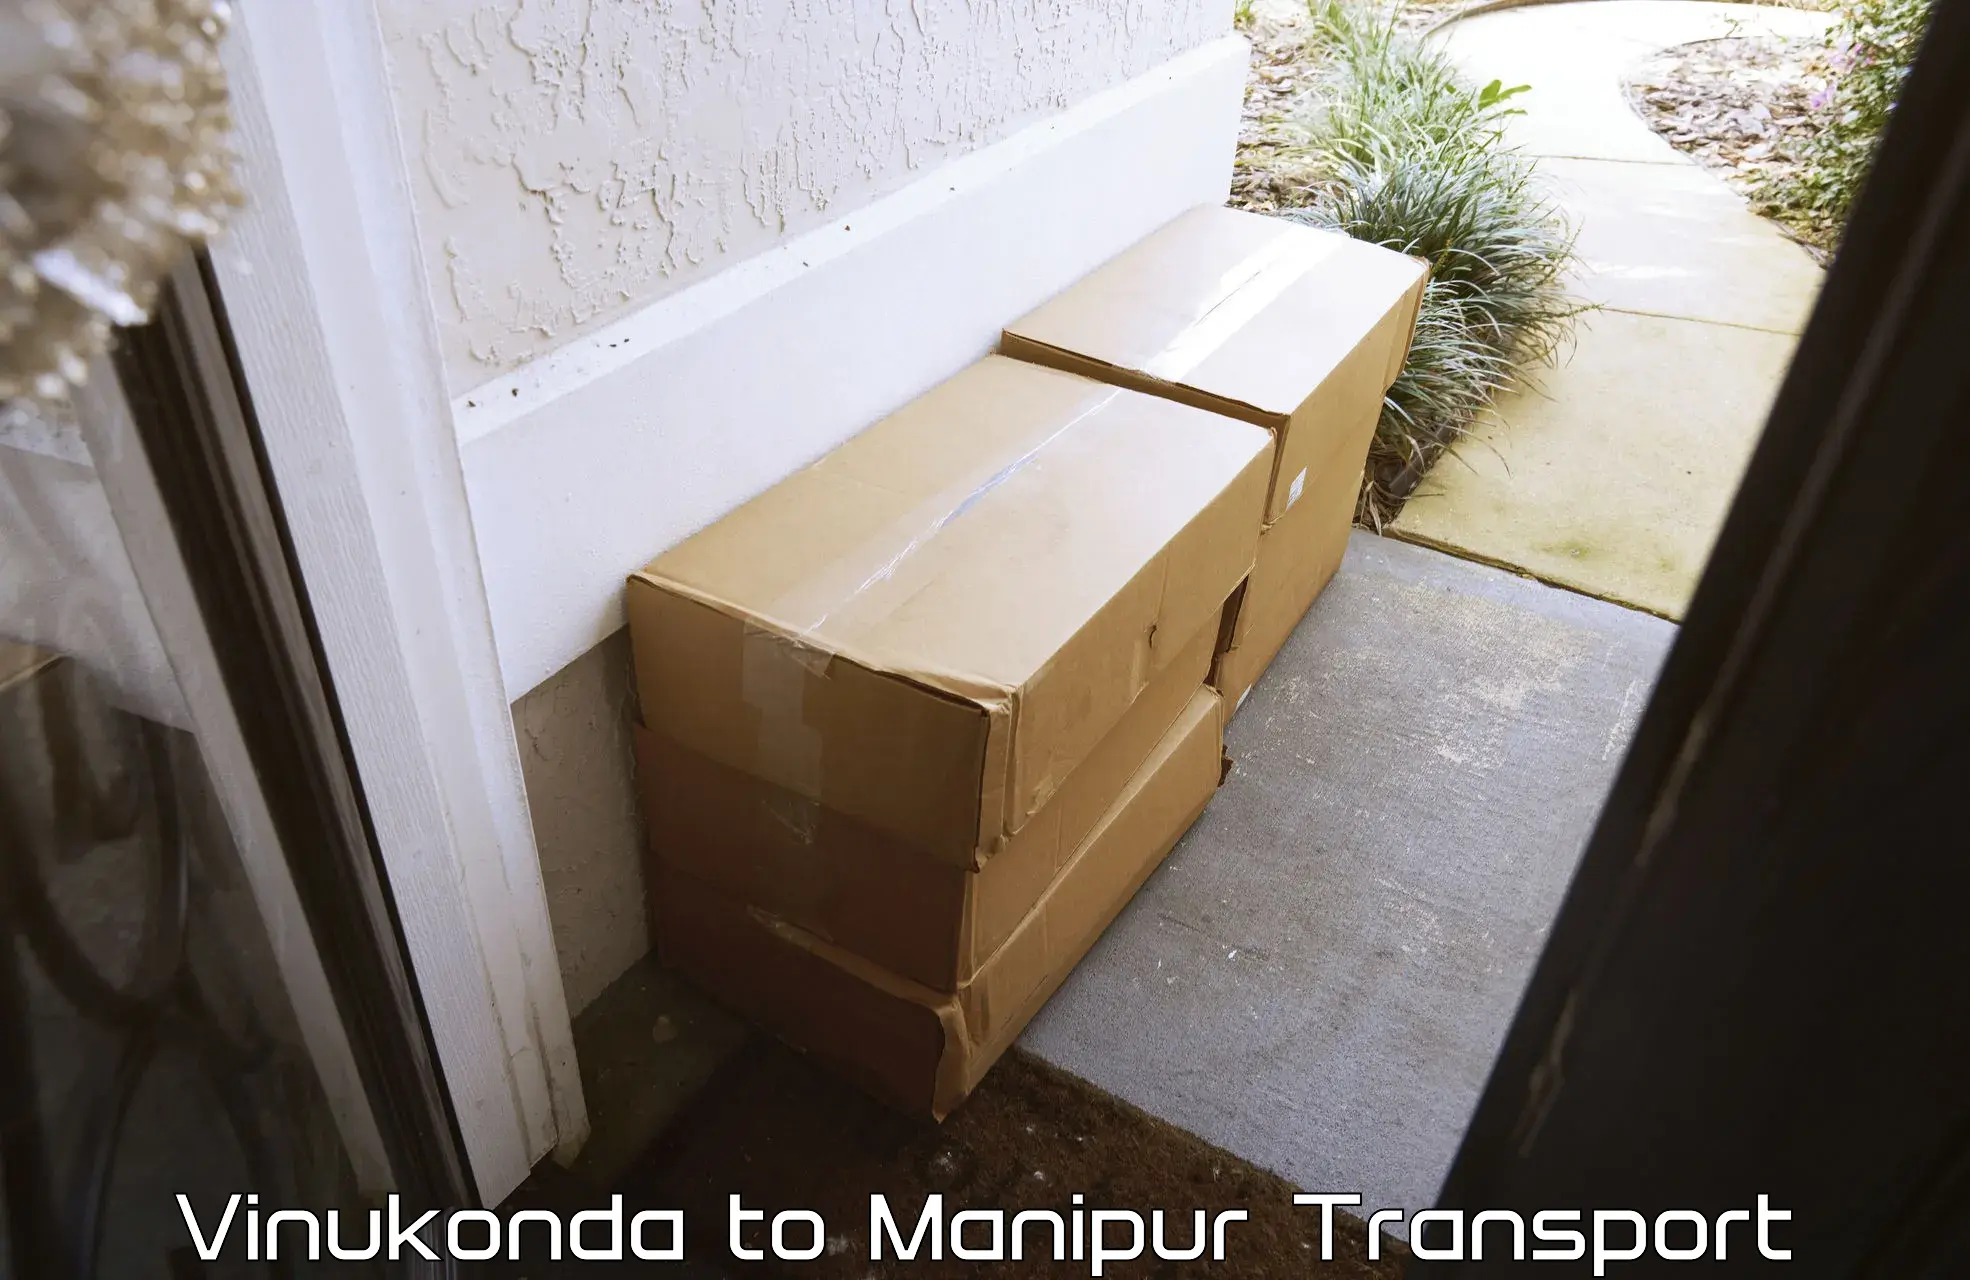 Daily parcel service transport Vinukonda to Ukhrul